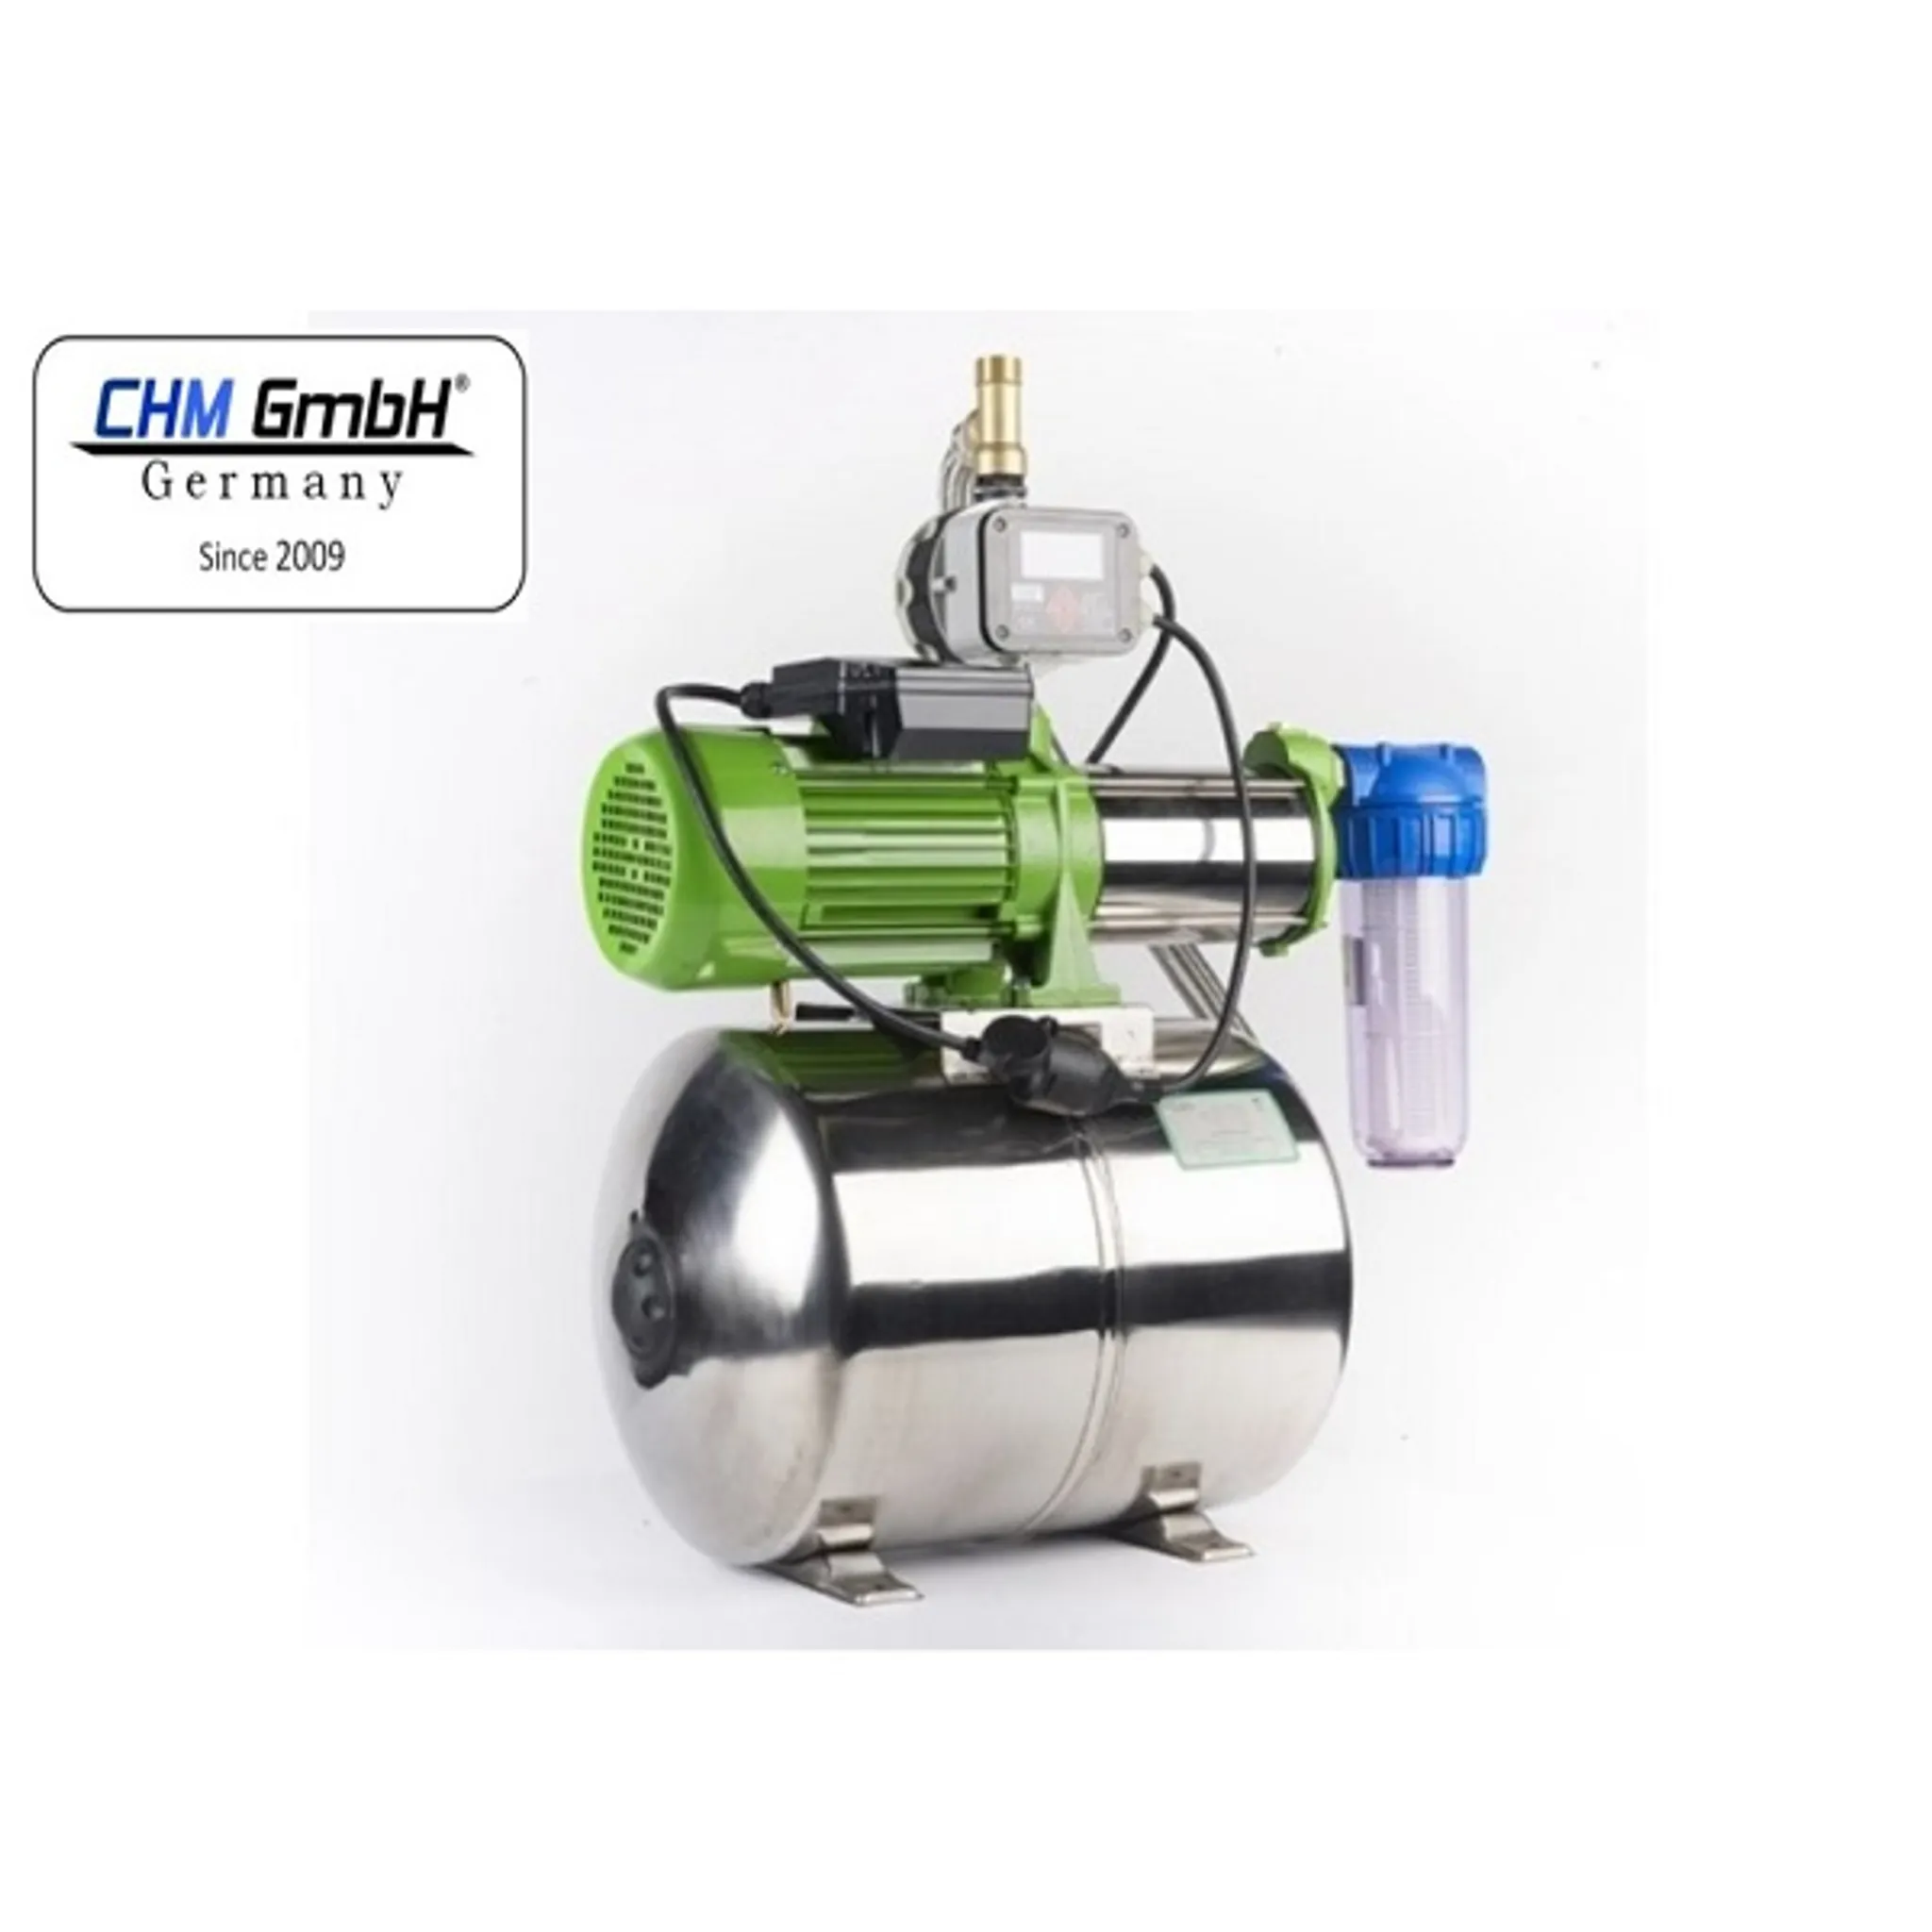 CHM GmbH® 50 Hauswasserwerk Watt Liter, 1100